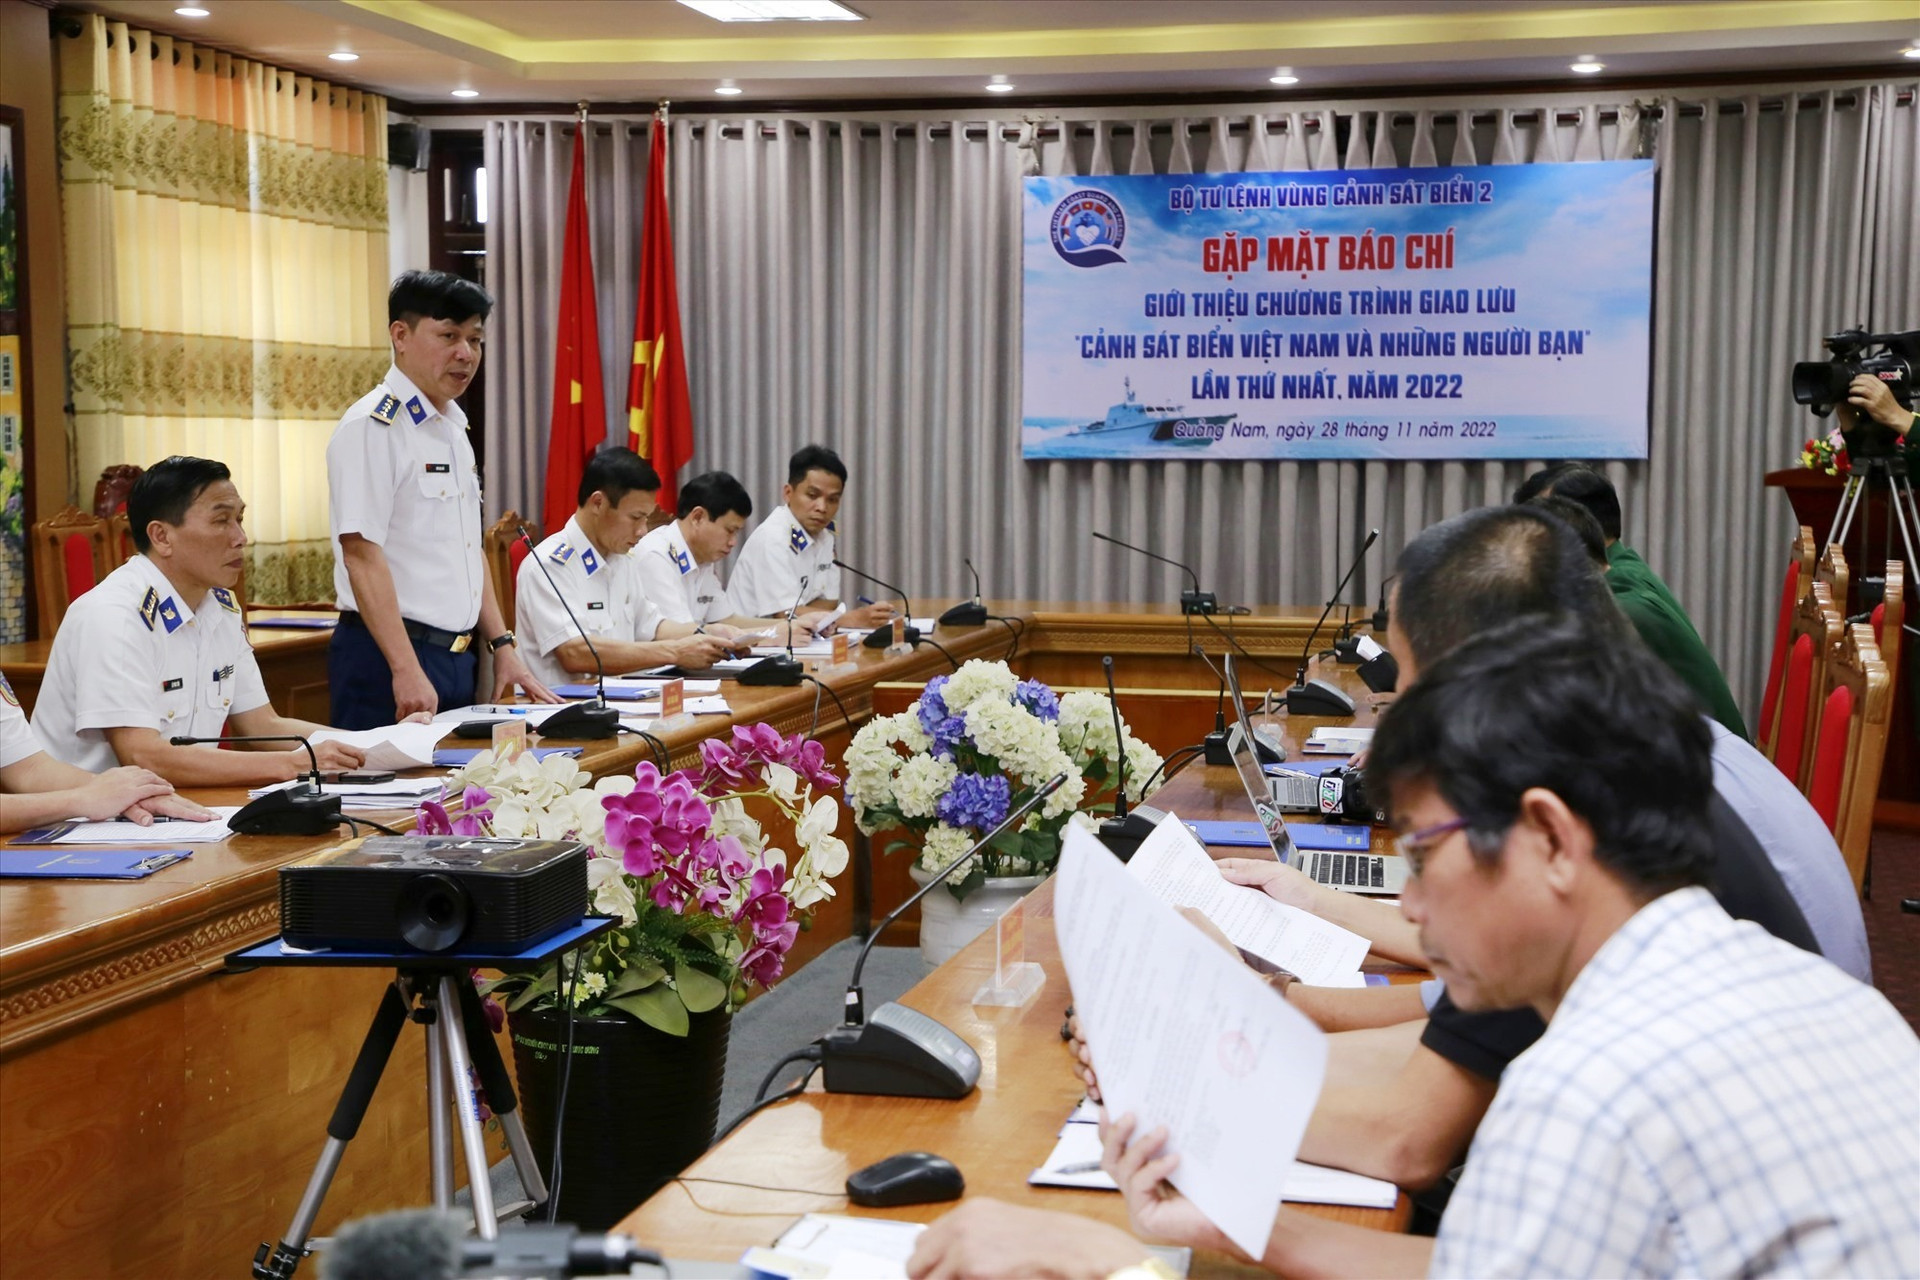 Bộ Tư lệnh Vùng Cảnh sát biển 2 gặp mặt, thông tin báo chí về chương trình “Cảnh sát biển Việt Nam và những người bạn” vào tháng 11/2022. Ảnh: T.C